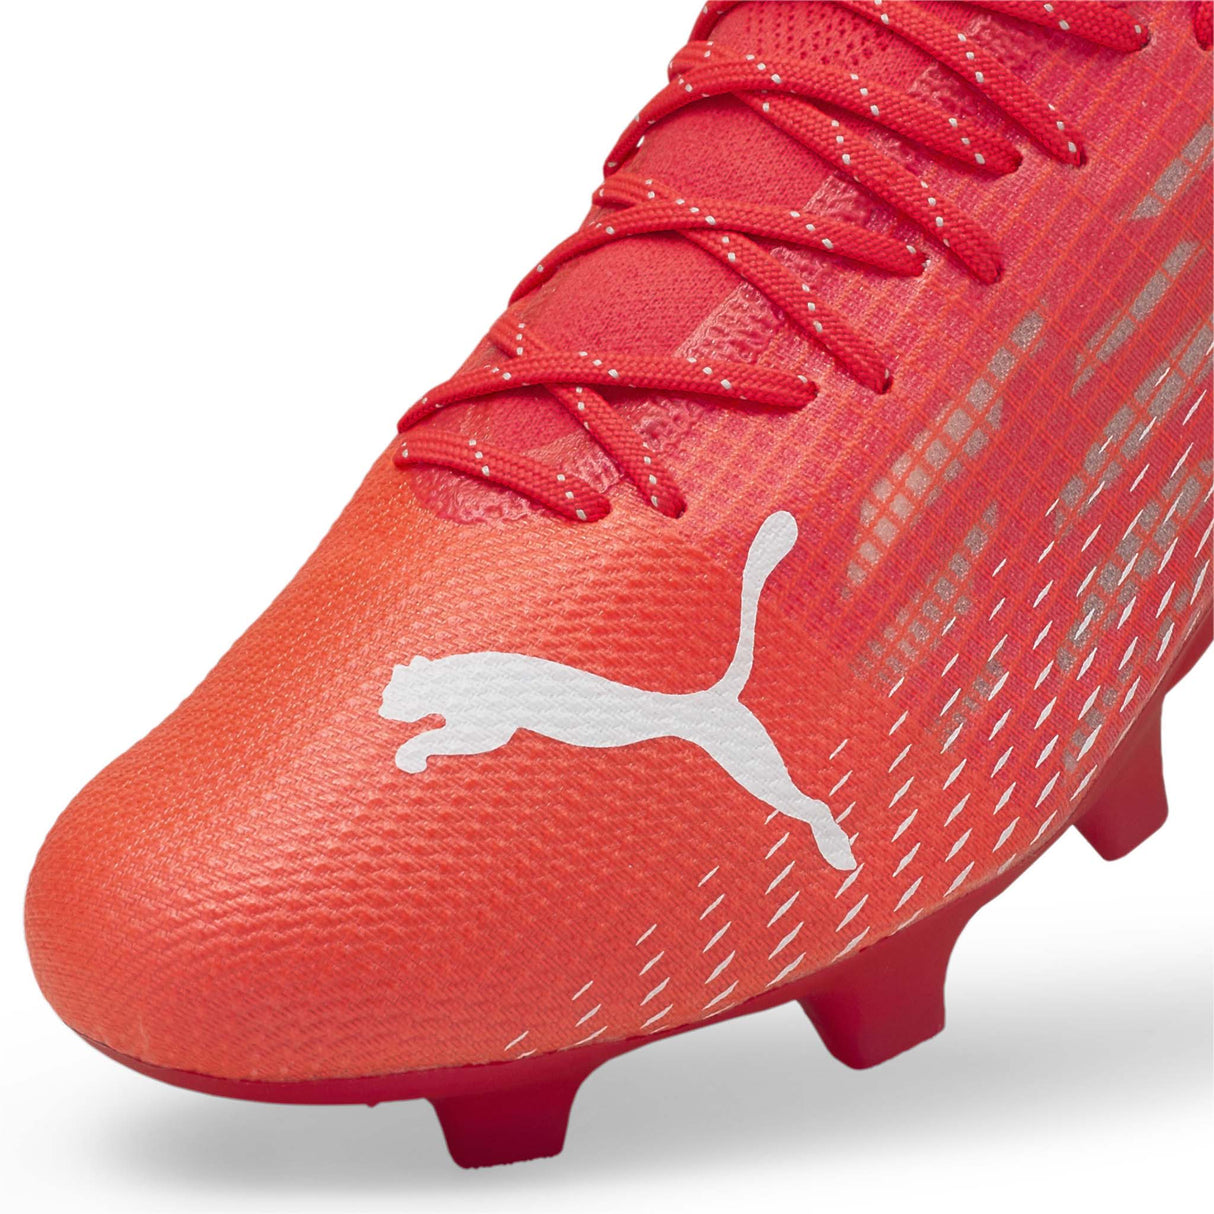 Puma Ultra 1.3 FG/AG chaussures de soccer pour adulte pointe